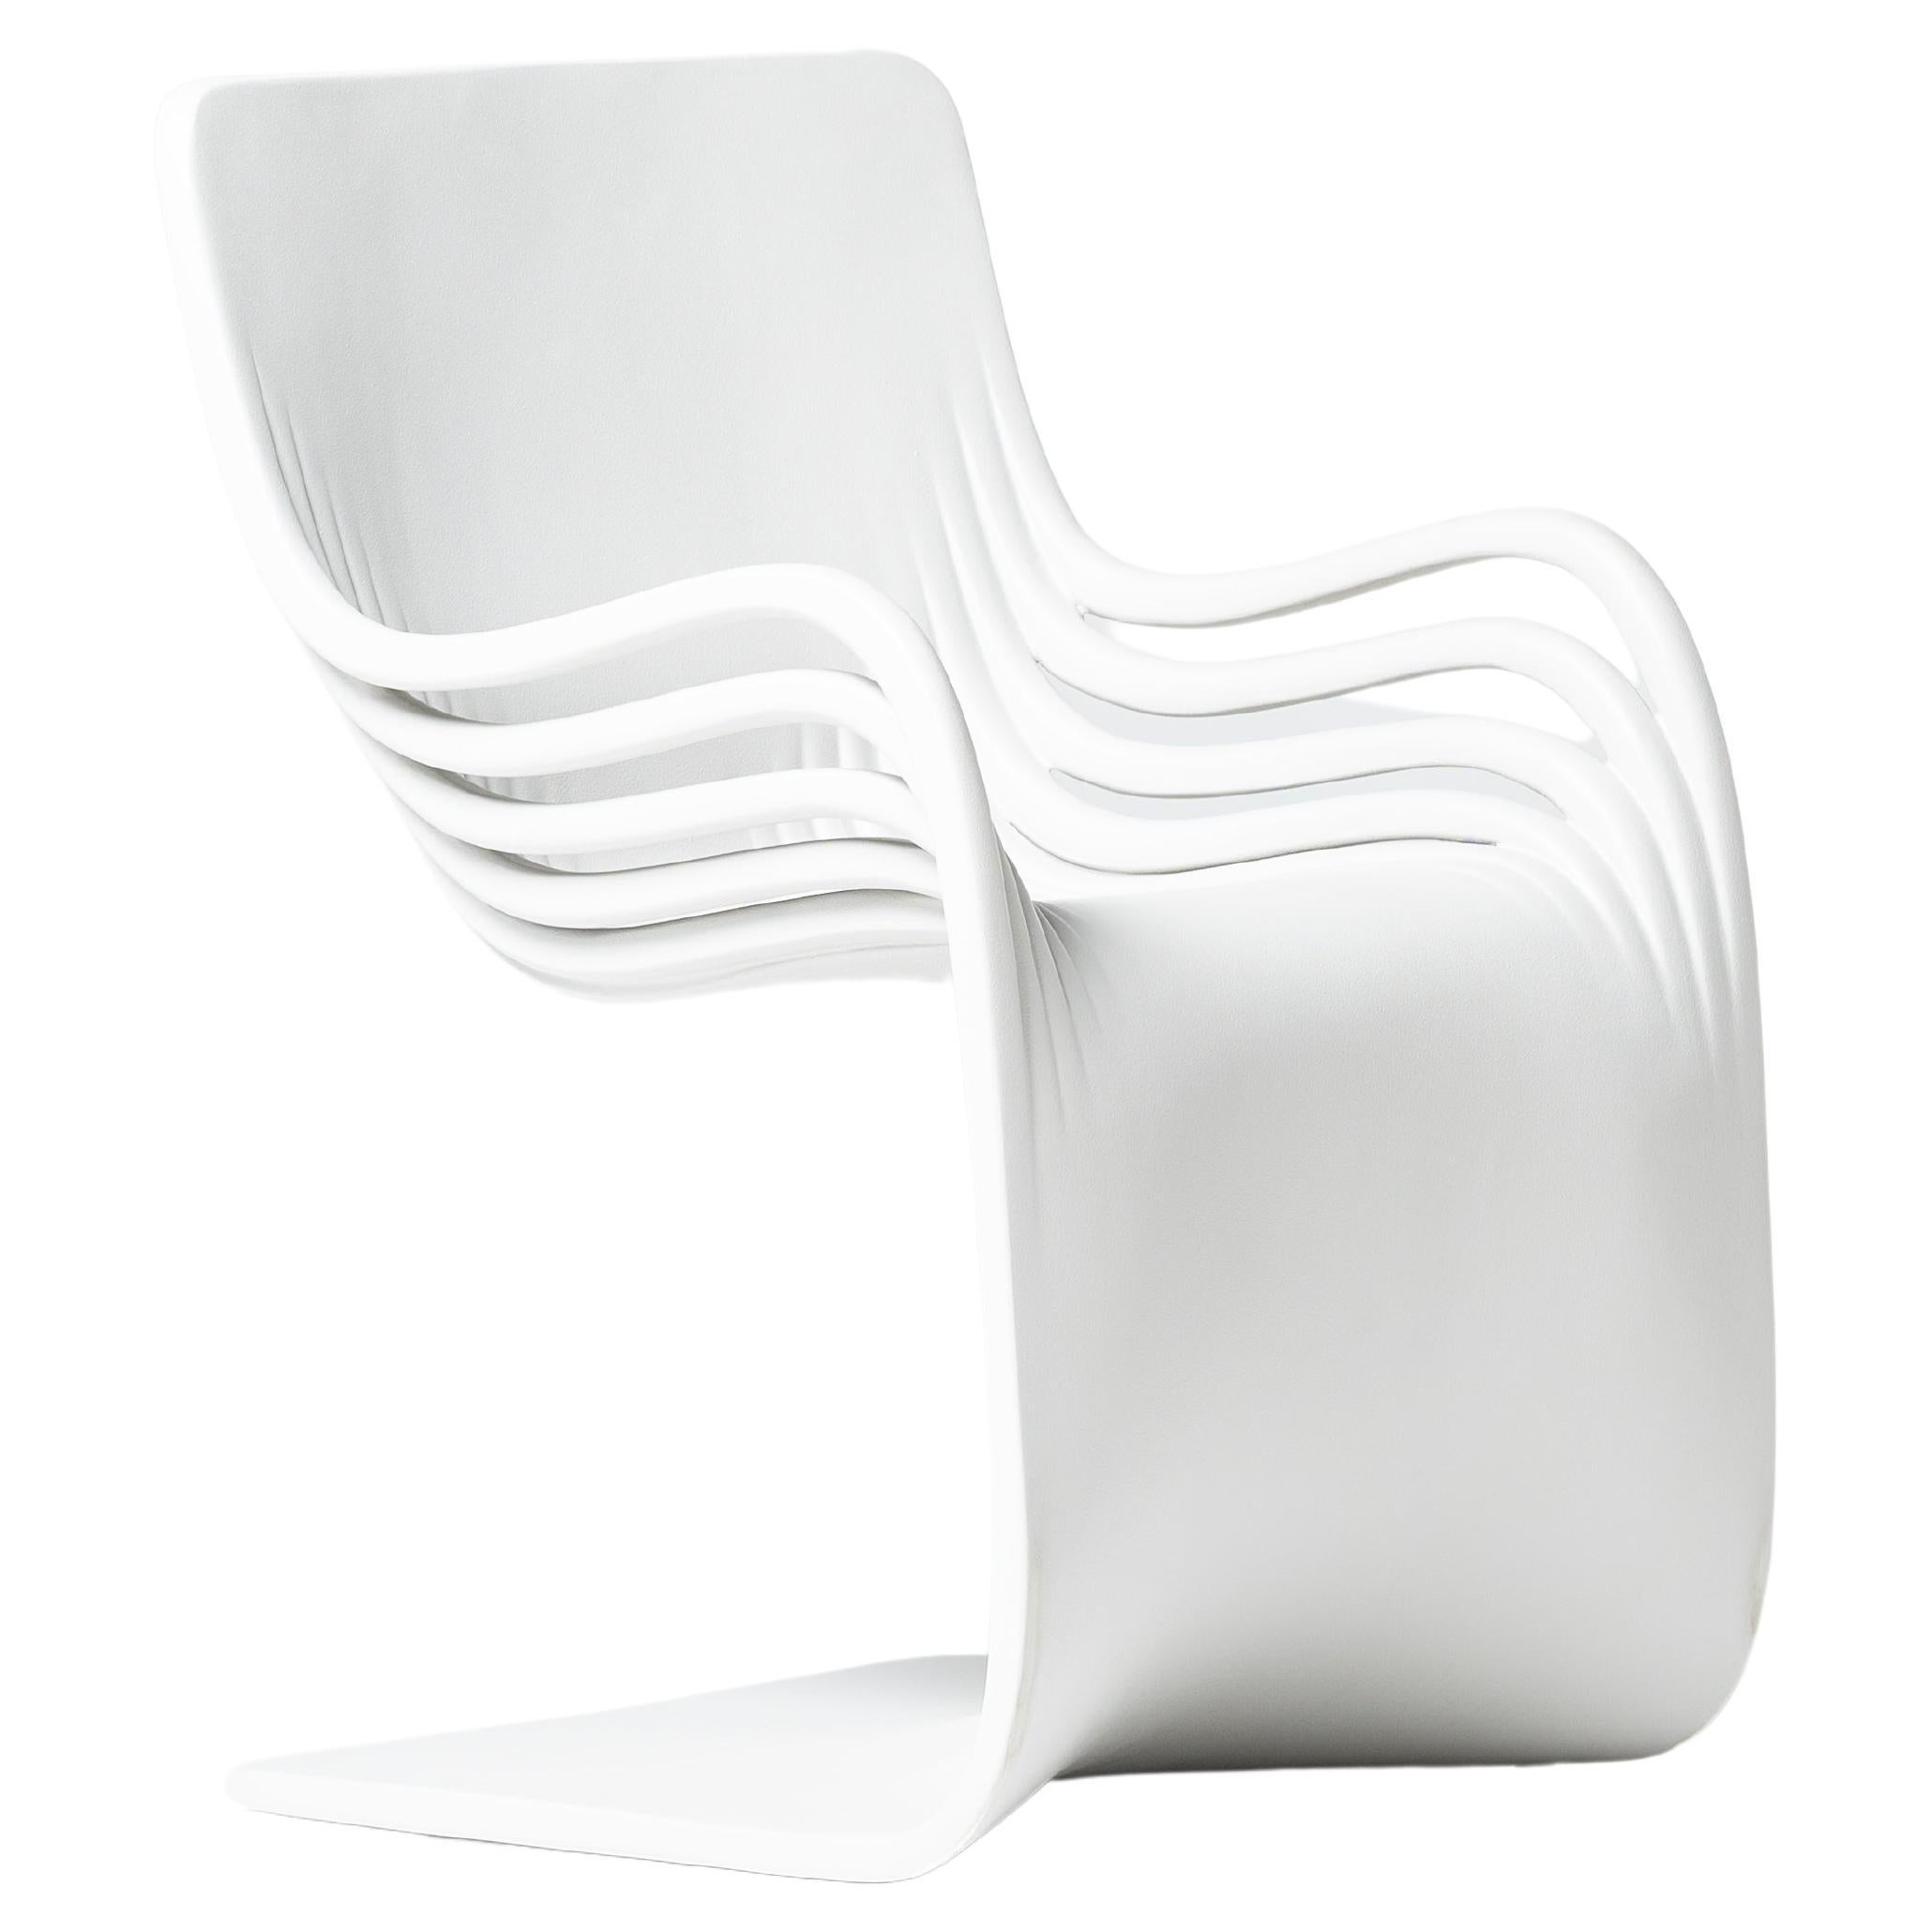  Pipo Fiber by Piegatto, une chaise contemporaine sculpturale